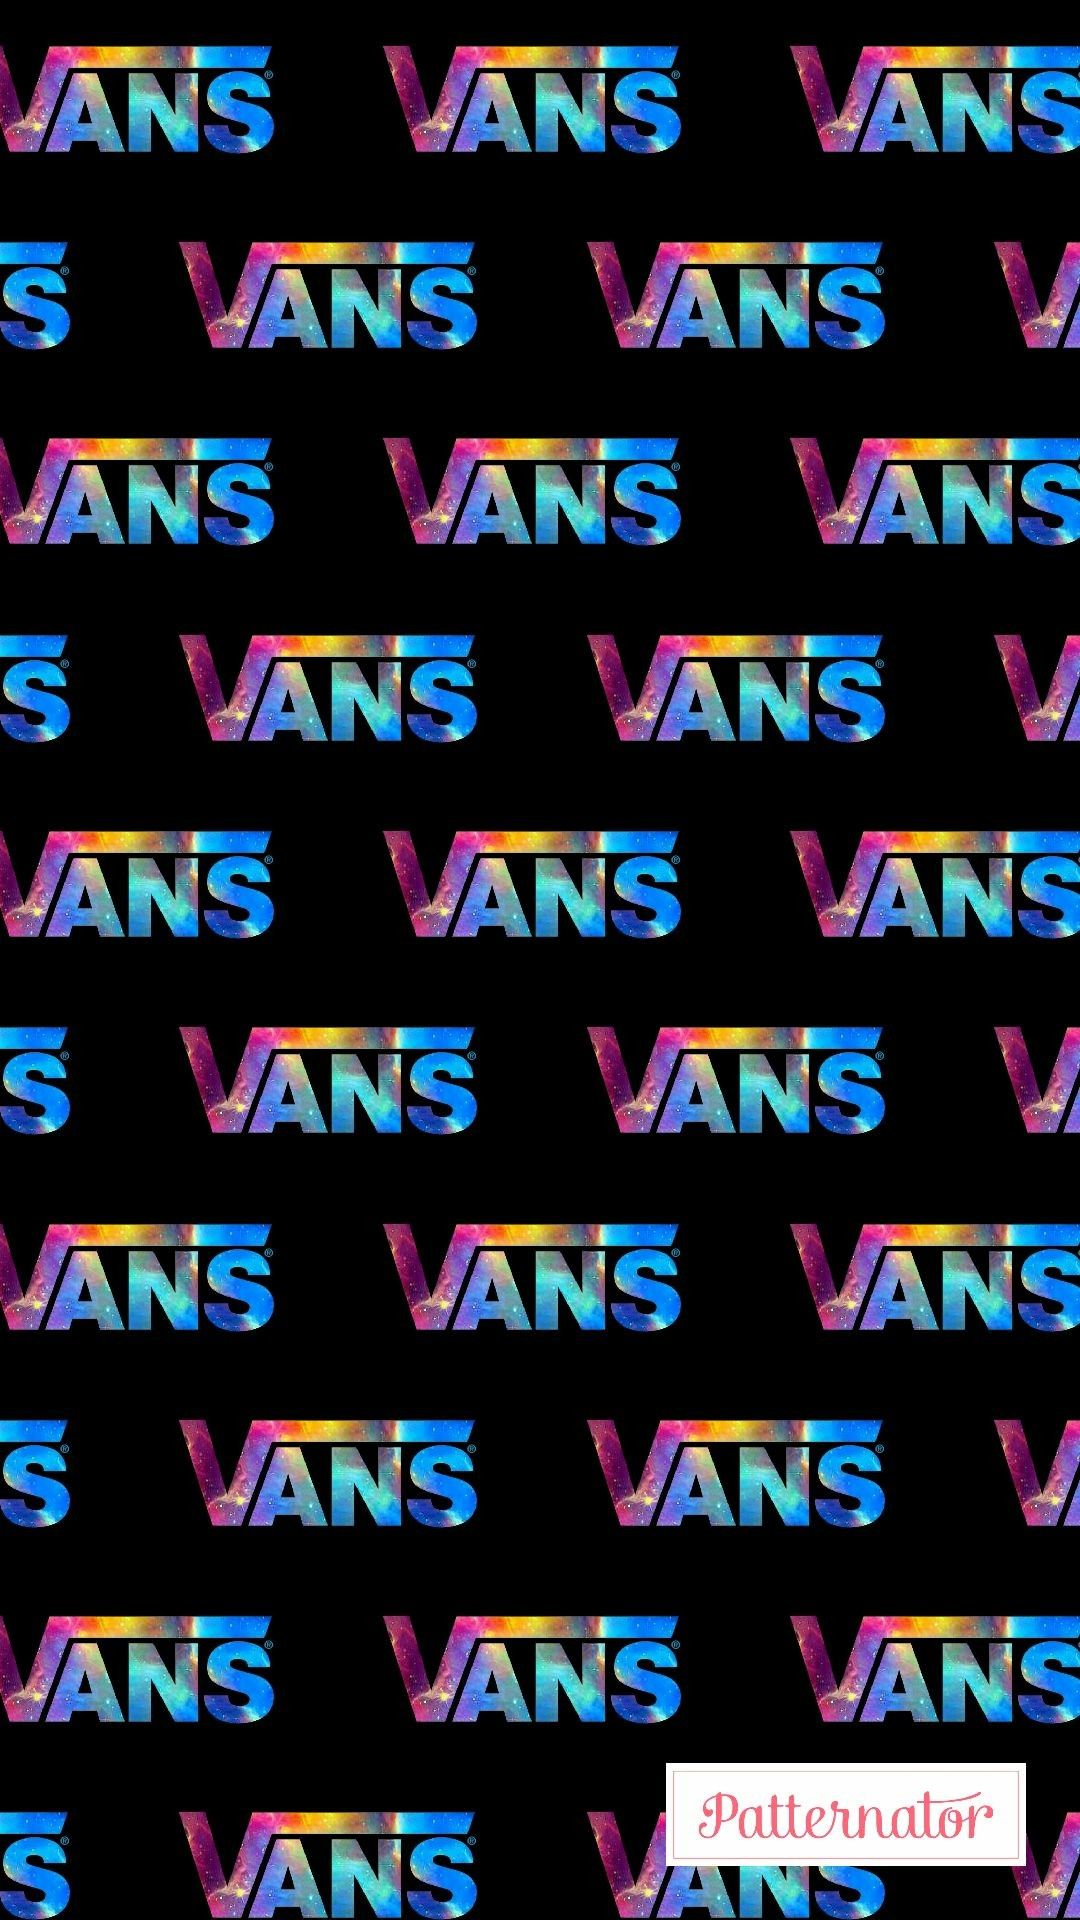 Vans ideas. vans off the wall, vans, vans logo